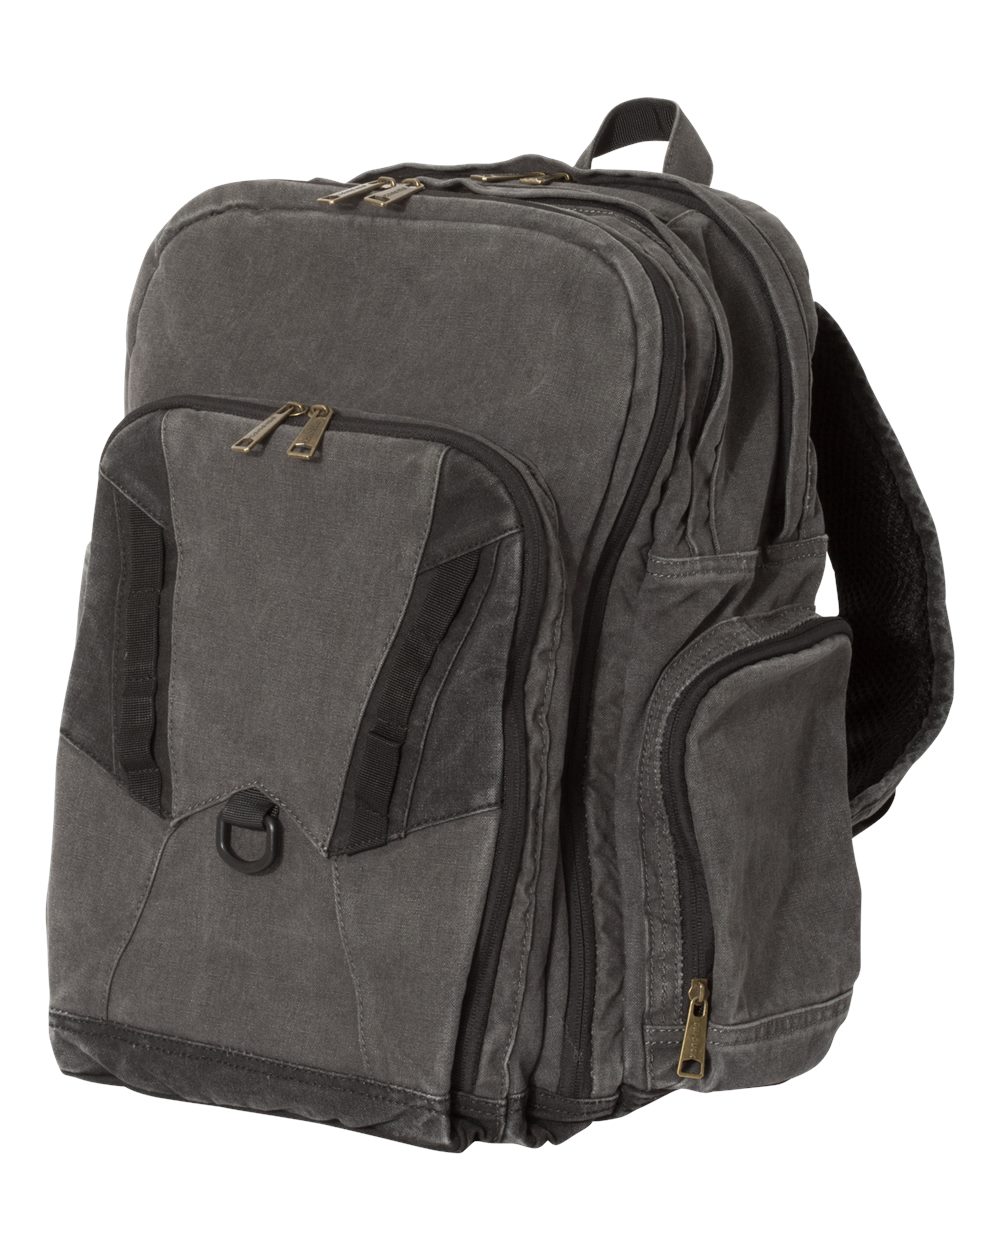 DRI DUCK 1039 - Traveler 32L Backpack